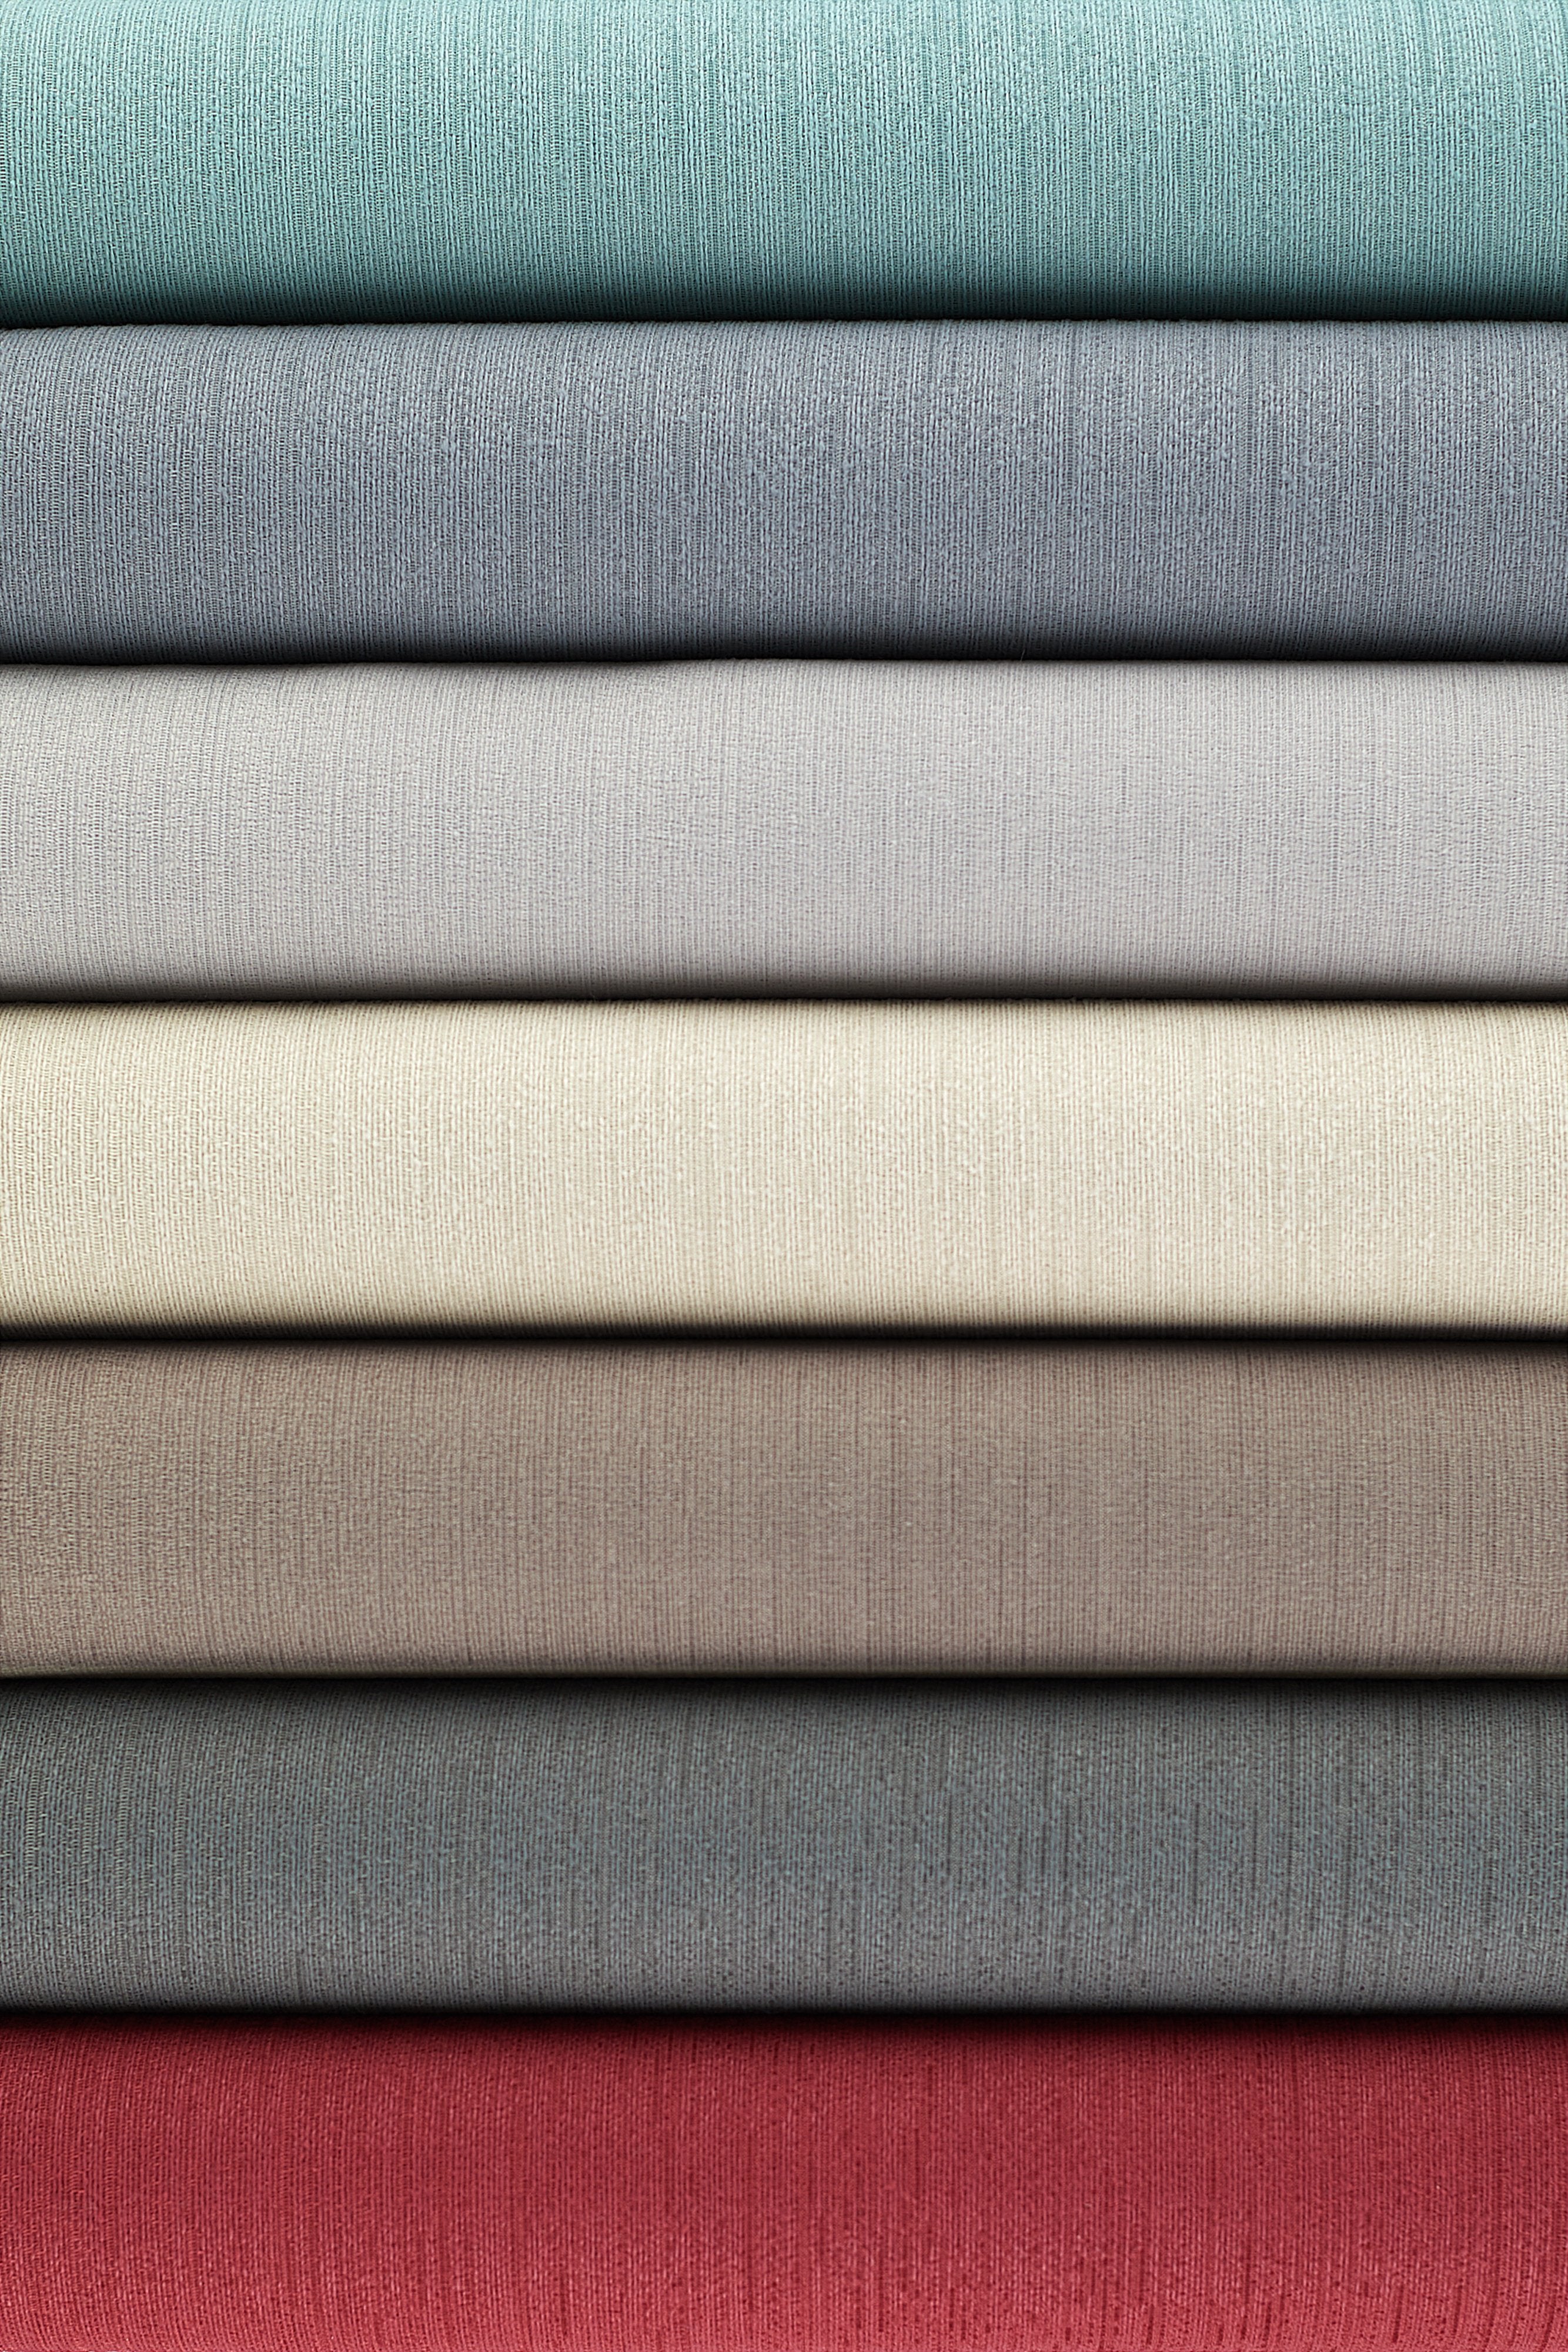 McAlister Textiles Sakai Dove Grey FR Plain Fabric Fabrics 